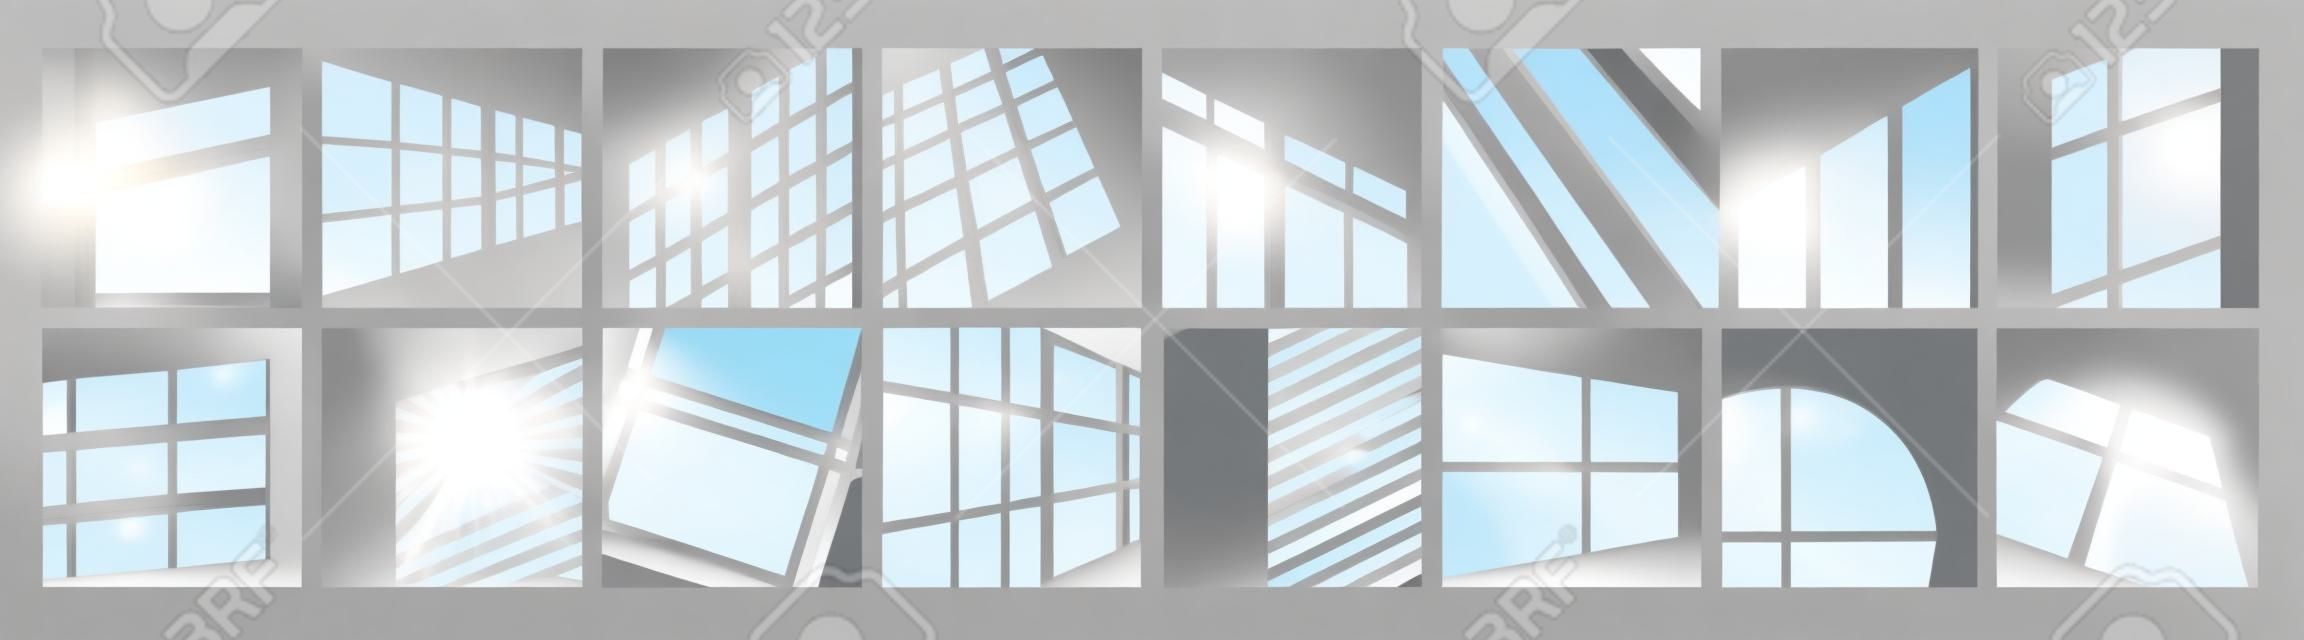 Ilustracja wektorowa światła okna zestaw odbicie światła słonecznego ram okiennych o kwadratowym okrągłym kształcie lub w perspektywie dnia efekt nakładki oświetleniowej na suficie ściany pokoju lub podłodze makieta tła projektu